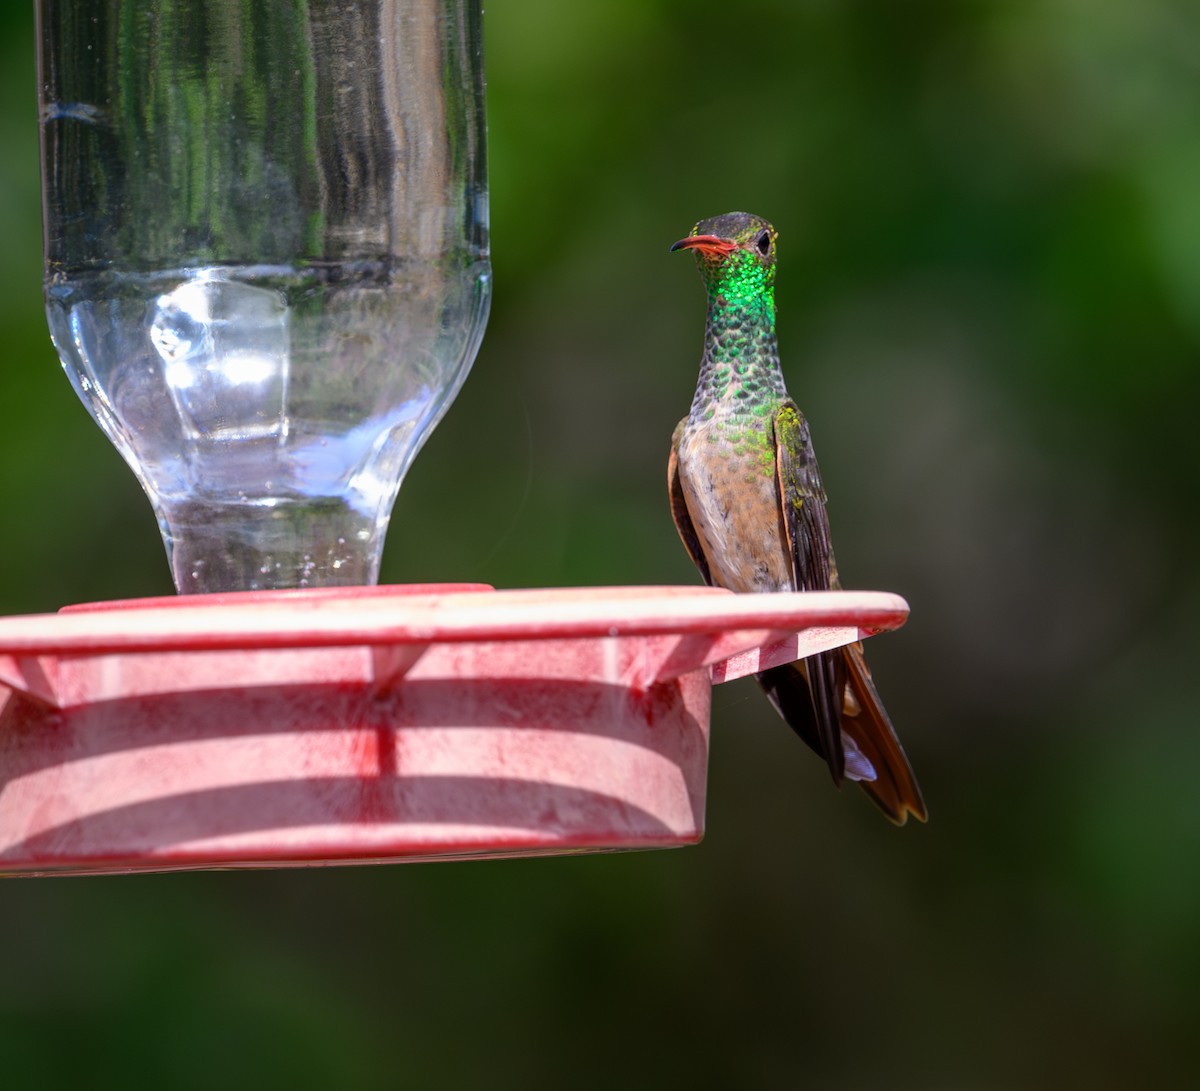 Buff-bellied Hummingbird - Patti Koger